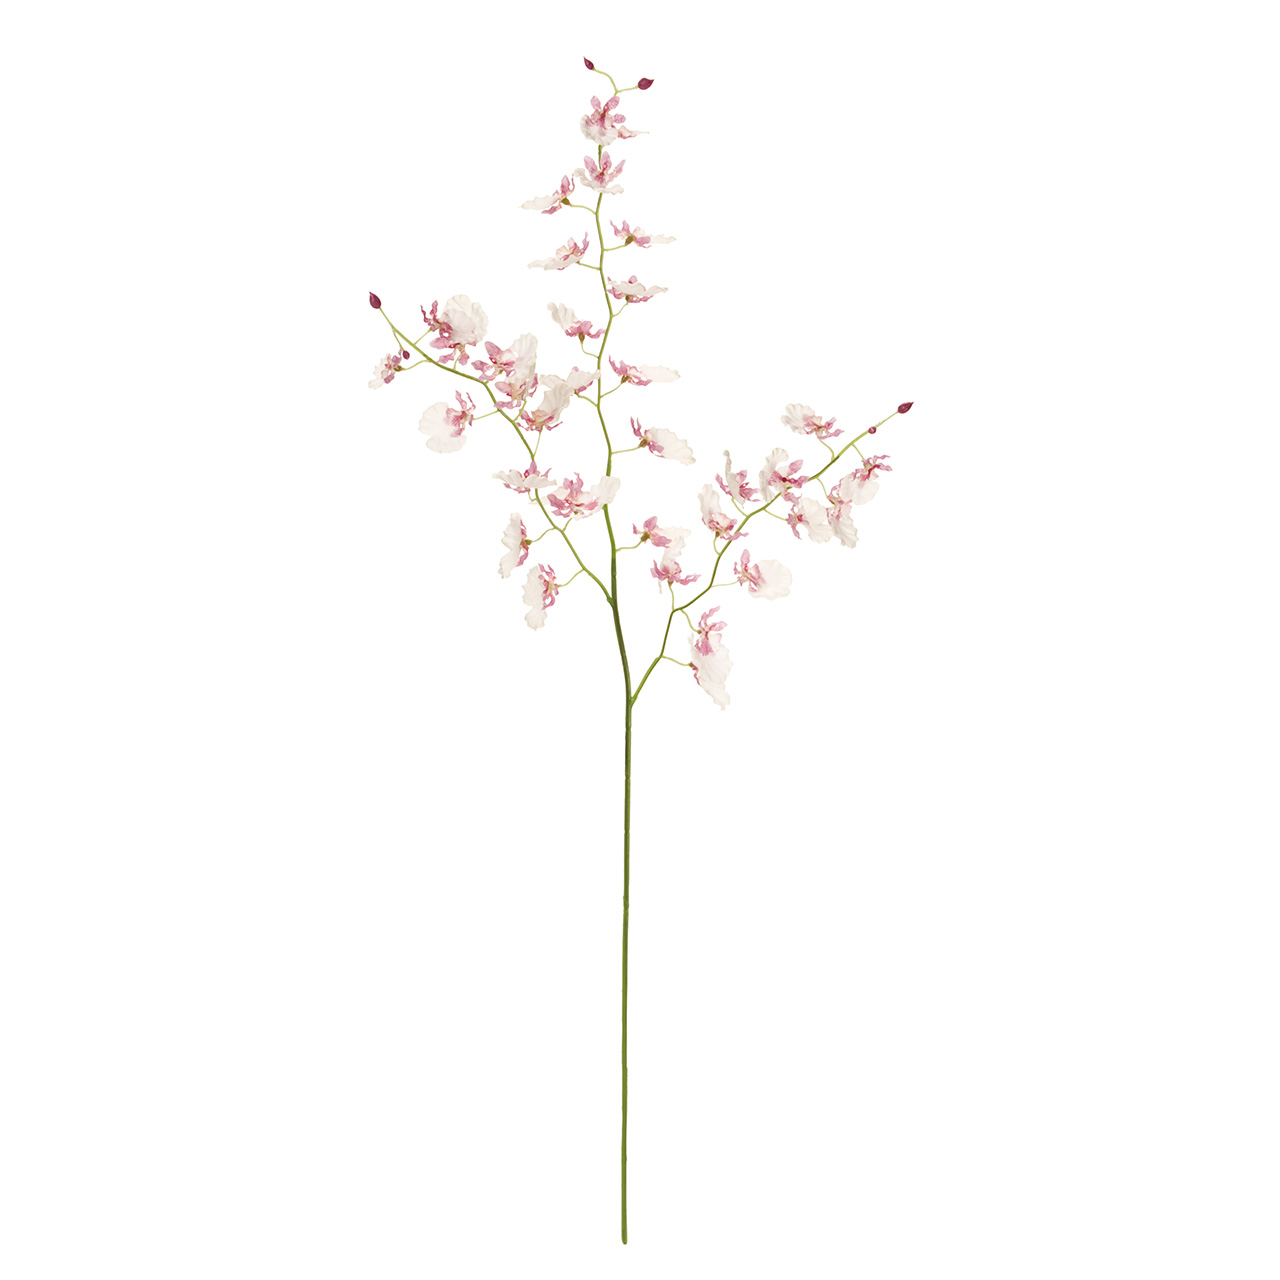 マイフラ 通販 Magiq フラワリーオンシジウム ホワイトライラック アーティフィシャルフラワー 造花 Fm 048 オンシジューム ホワイトライラック Magiq アーティフィシャルフラワー 造花 全国にmagiq 花器 花資材などをお届けします